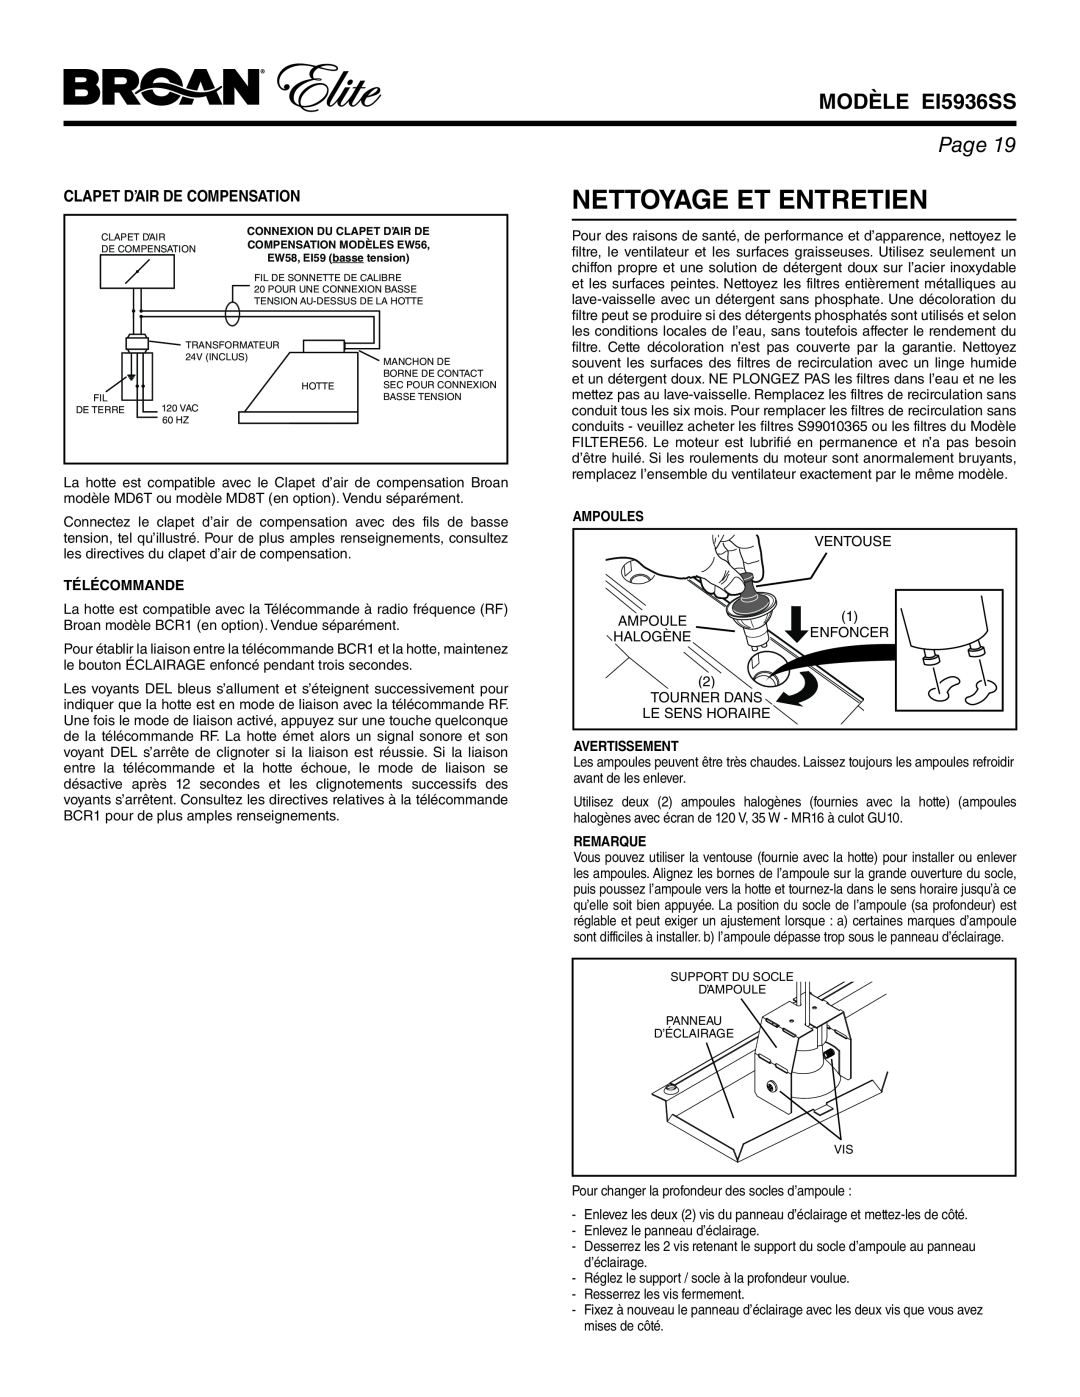 Broan Nettoyage Et Entretien, Clapet D’Air De Compensation, MODÈLE EI5936SS, Page, Télécommande, Ampoules, Remarque 